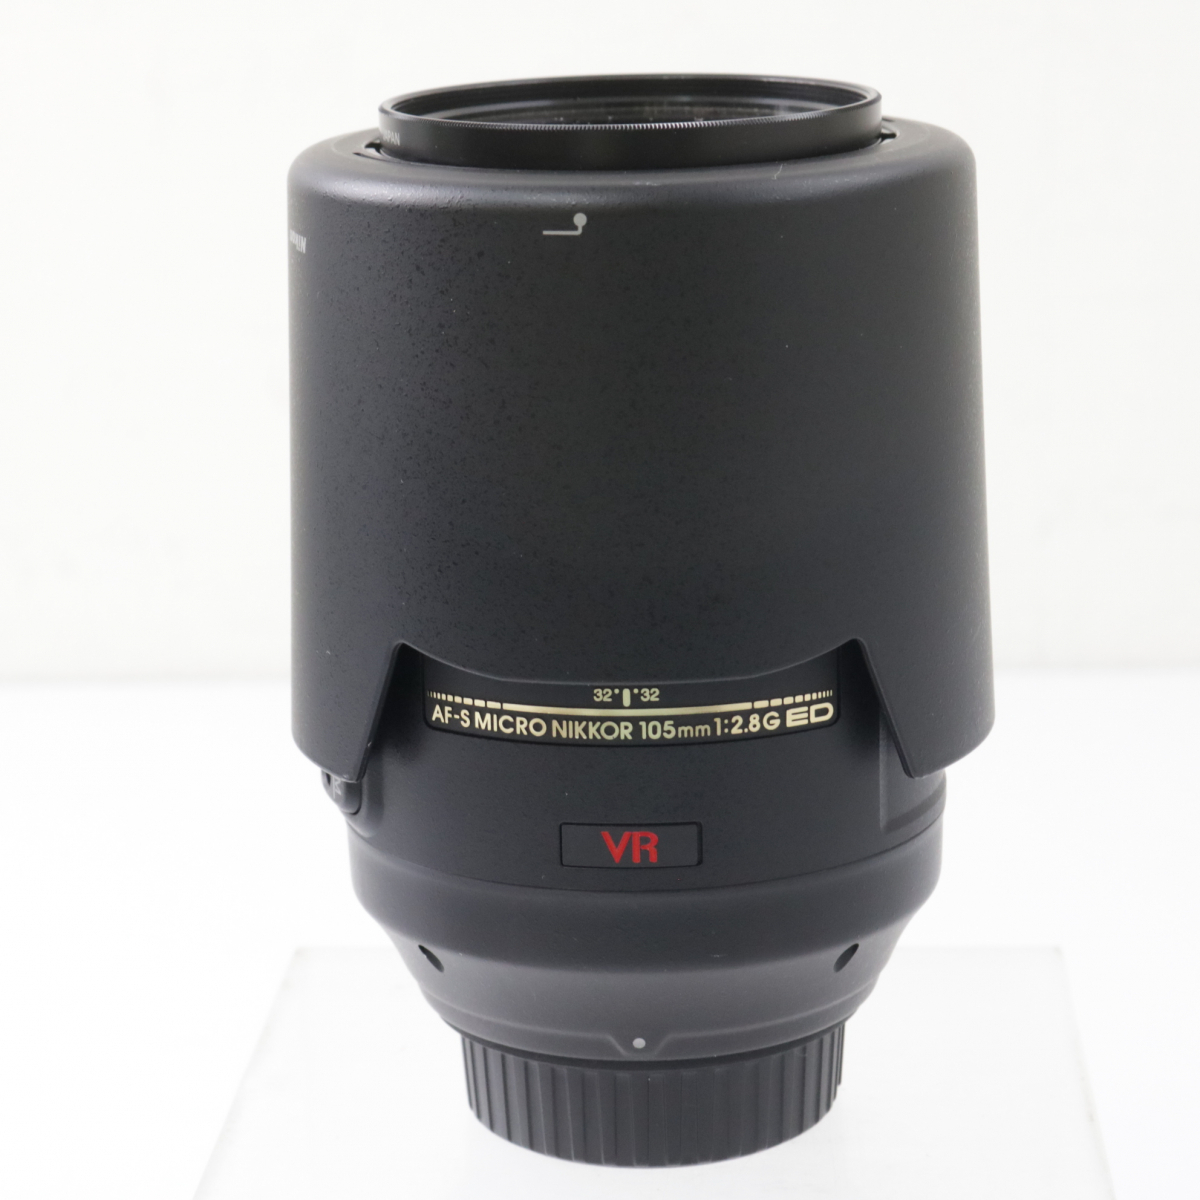 【説明書あり】Nikon AF-S VR Micro NIKKOR 105mm 1:2.8G ED ブラックカラー 黒色 ニコン 趣味 初心者 練習 040FEDFR97_画像3